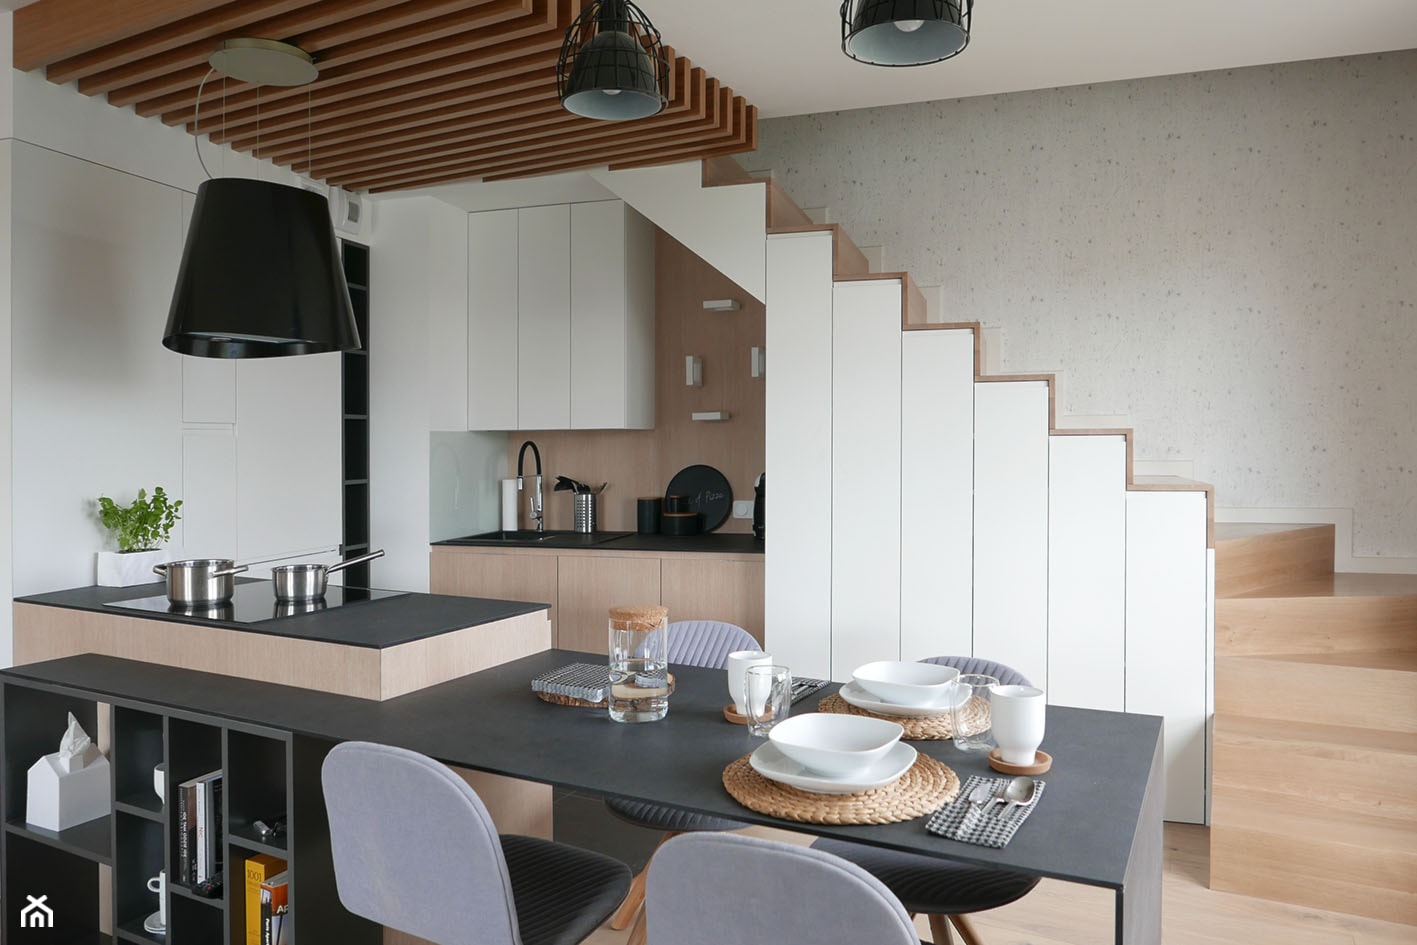 KONKURS - mieszkanie z kuchnią pod schodami - Mała biała jadalnia w kuchni, styl skandynawski - zdjęcie od Archomega Biuro Architektoniczne - Homebook